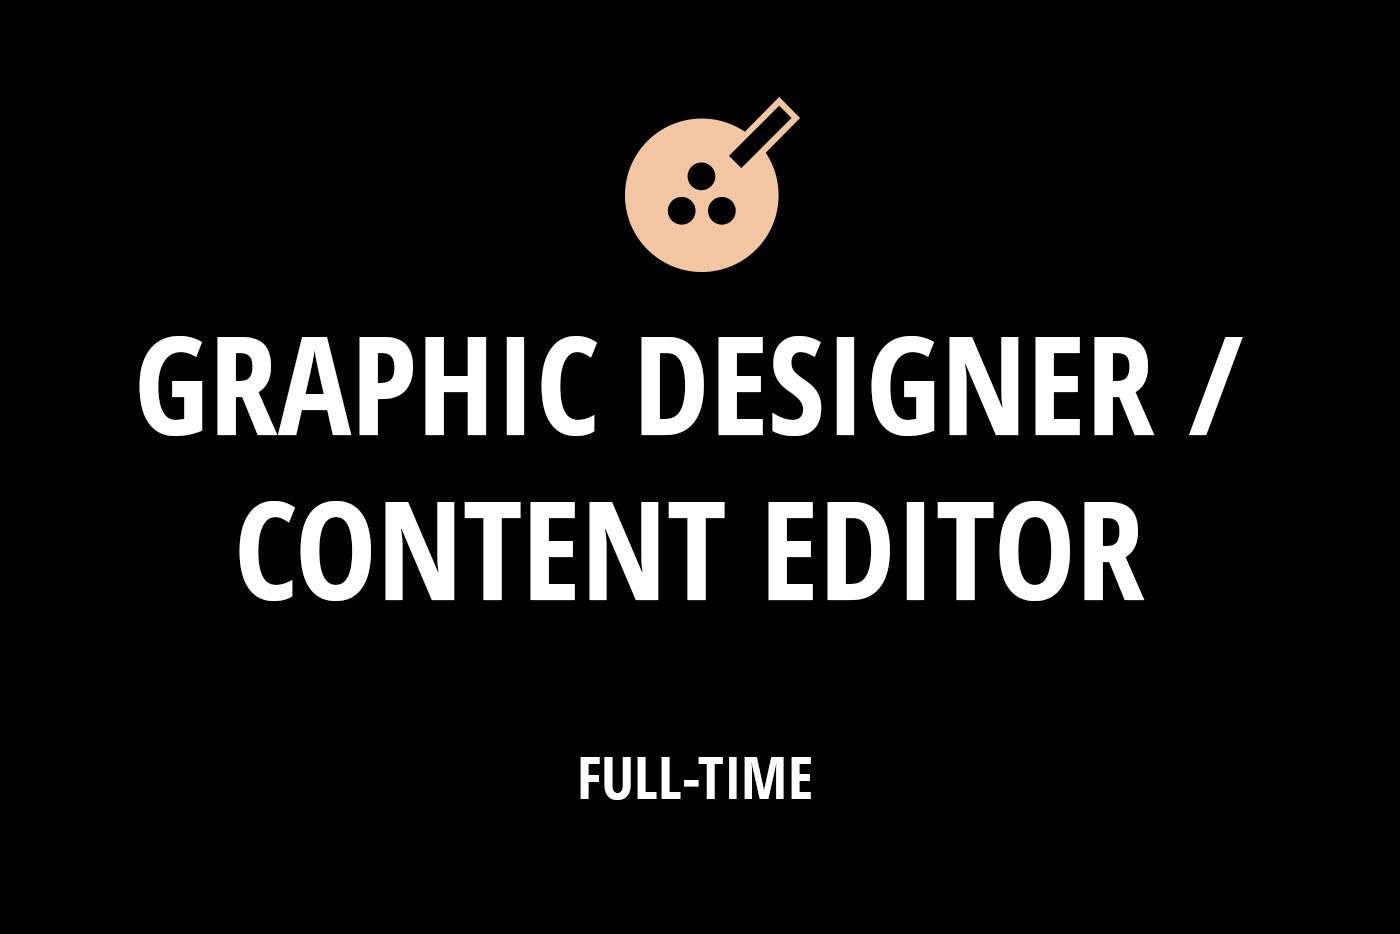 Graphic Designer / Content Editor